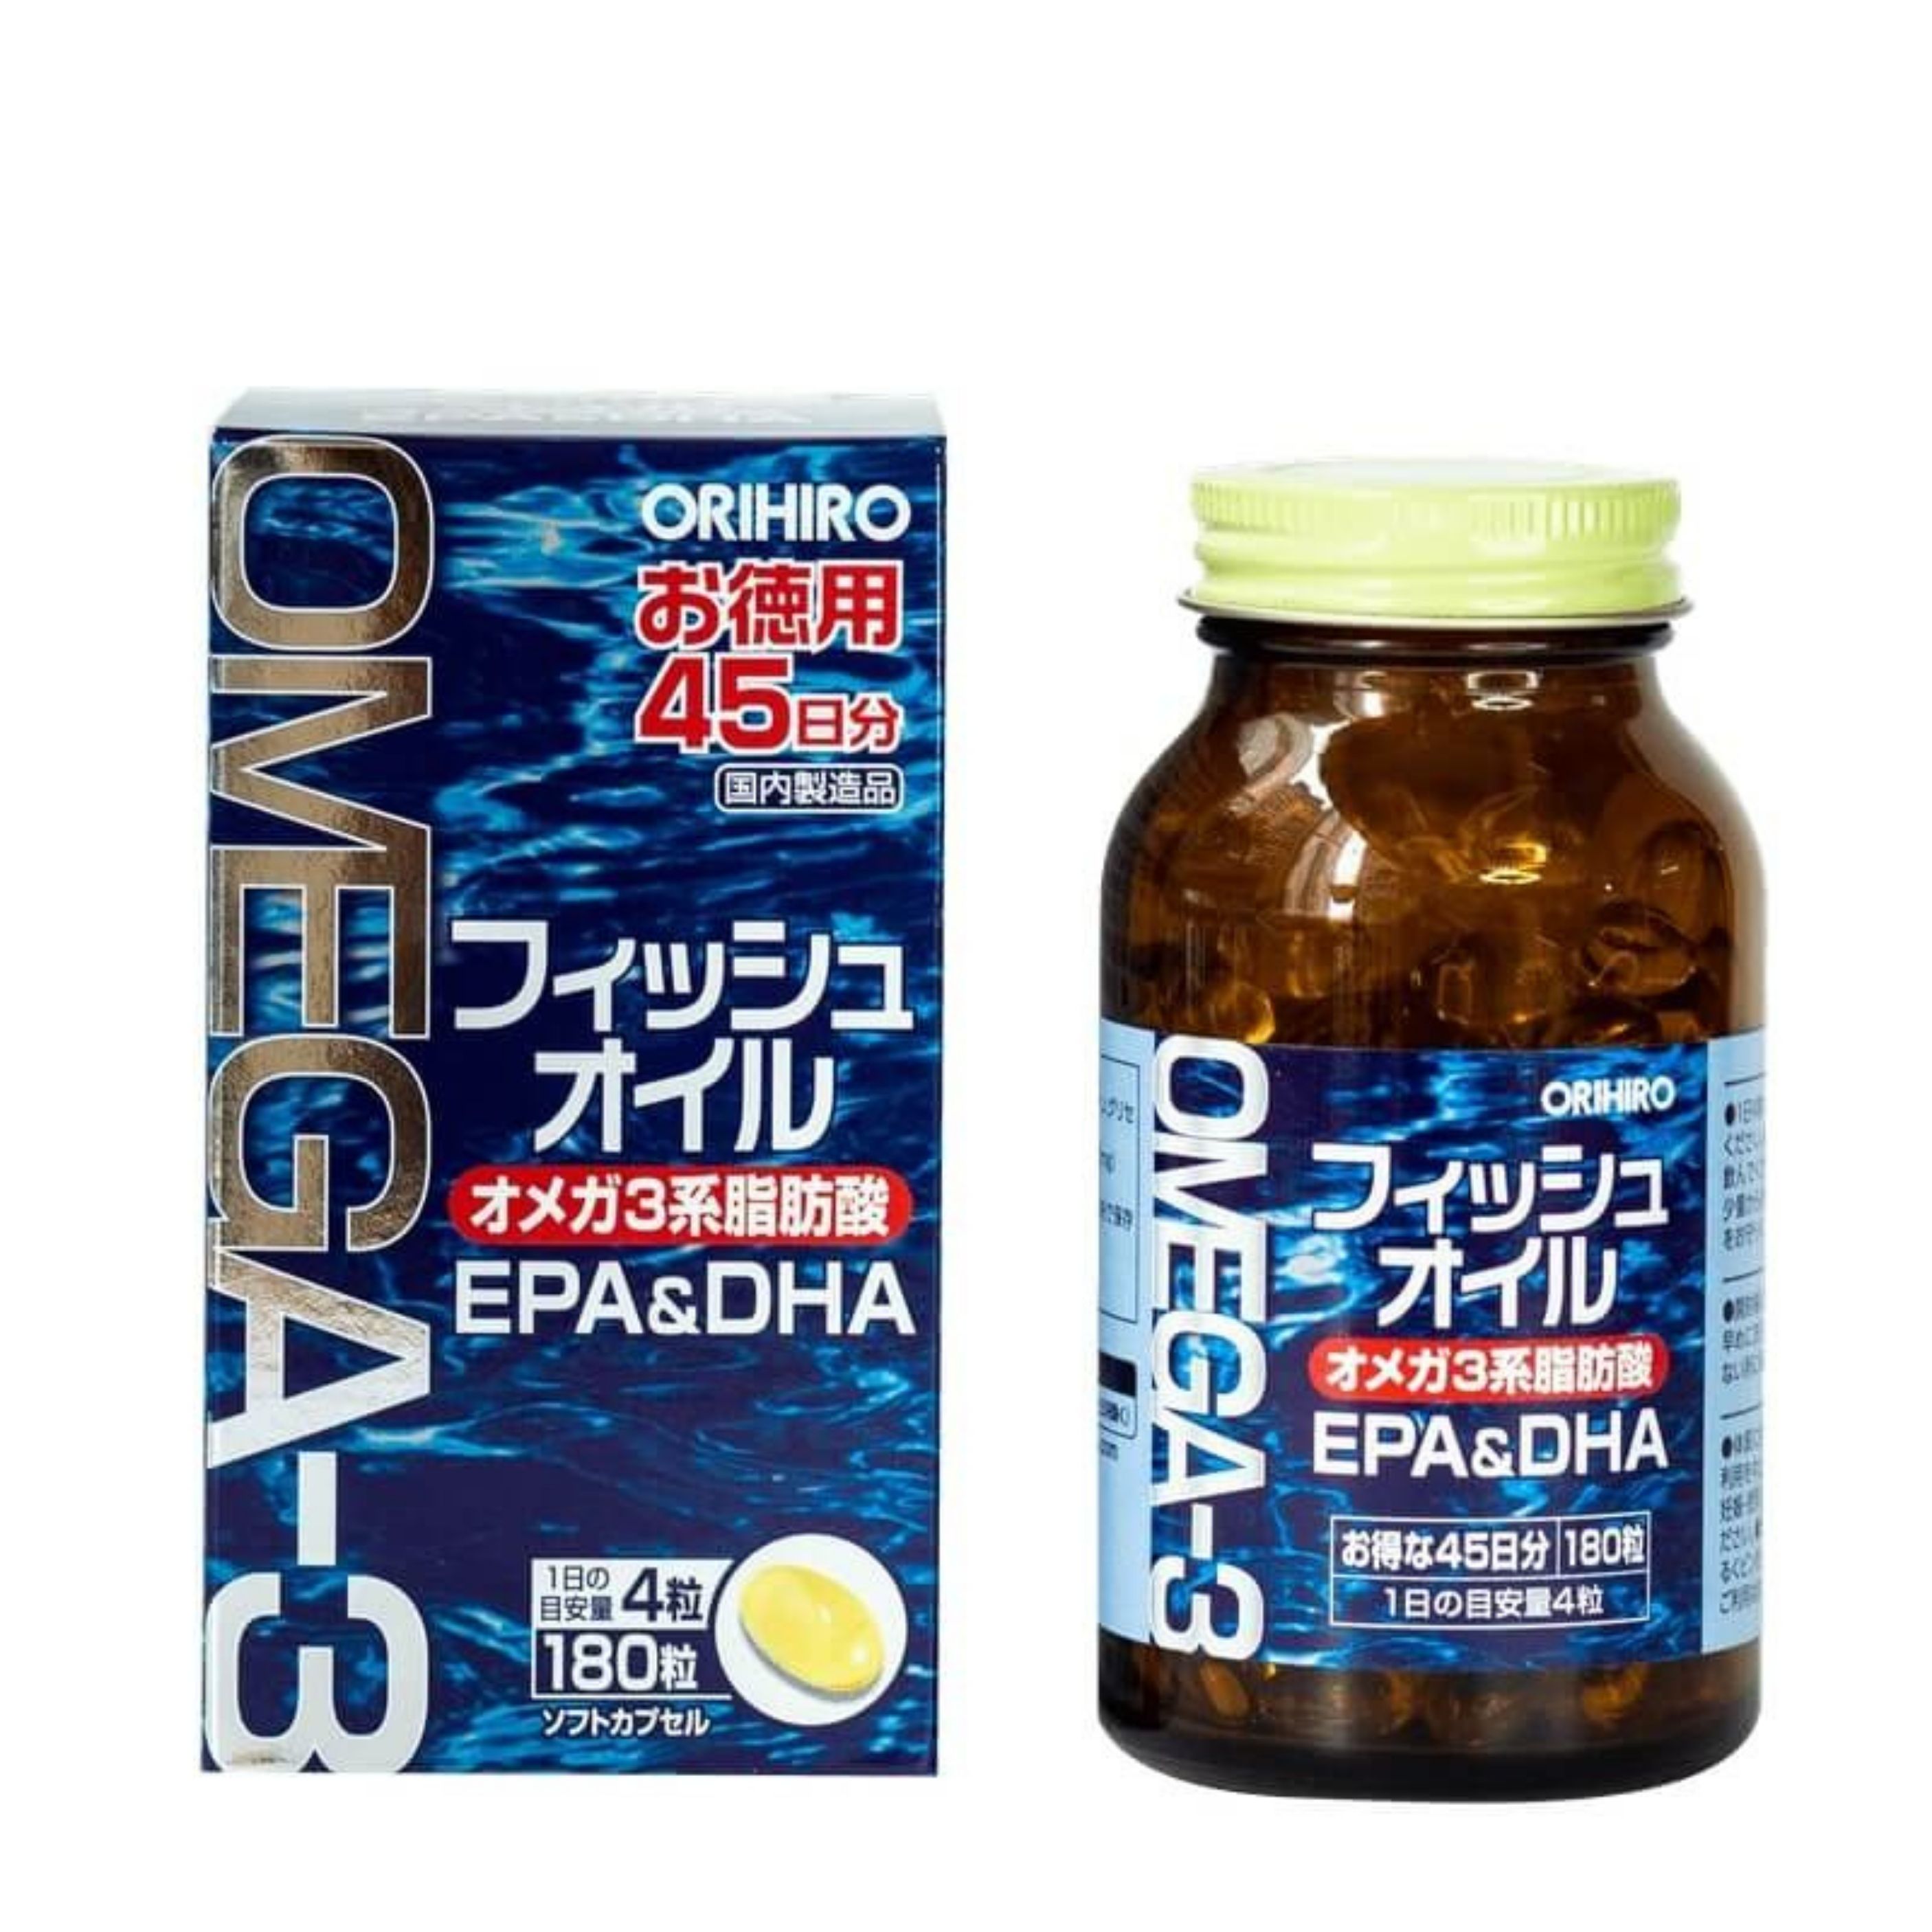 viên uống dầu cá omega 3 orihiro 180 viên phòng ngừa các bệnh tim mạch 2